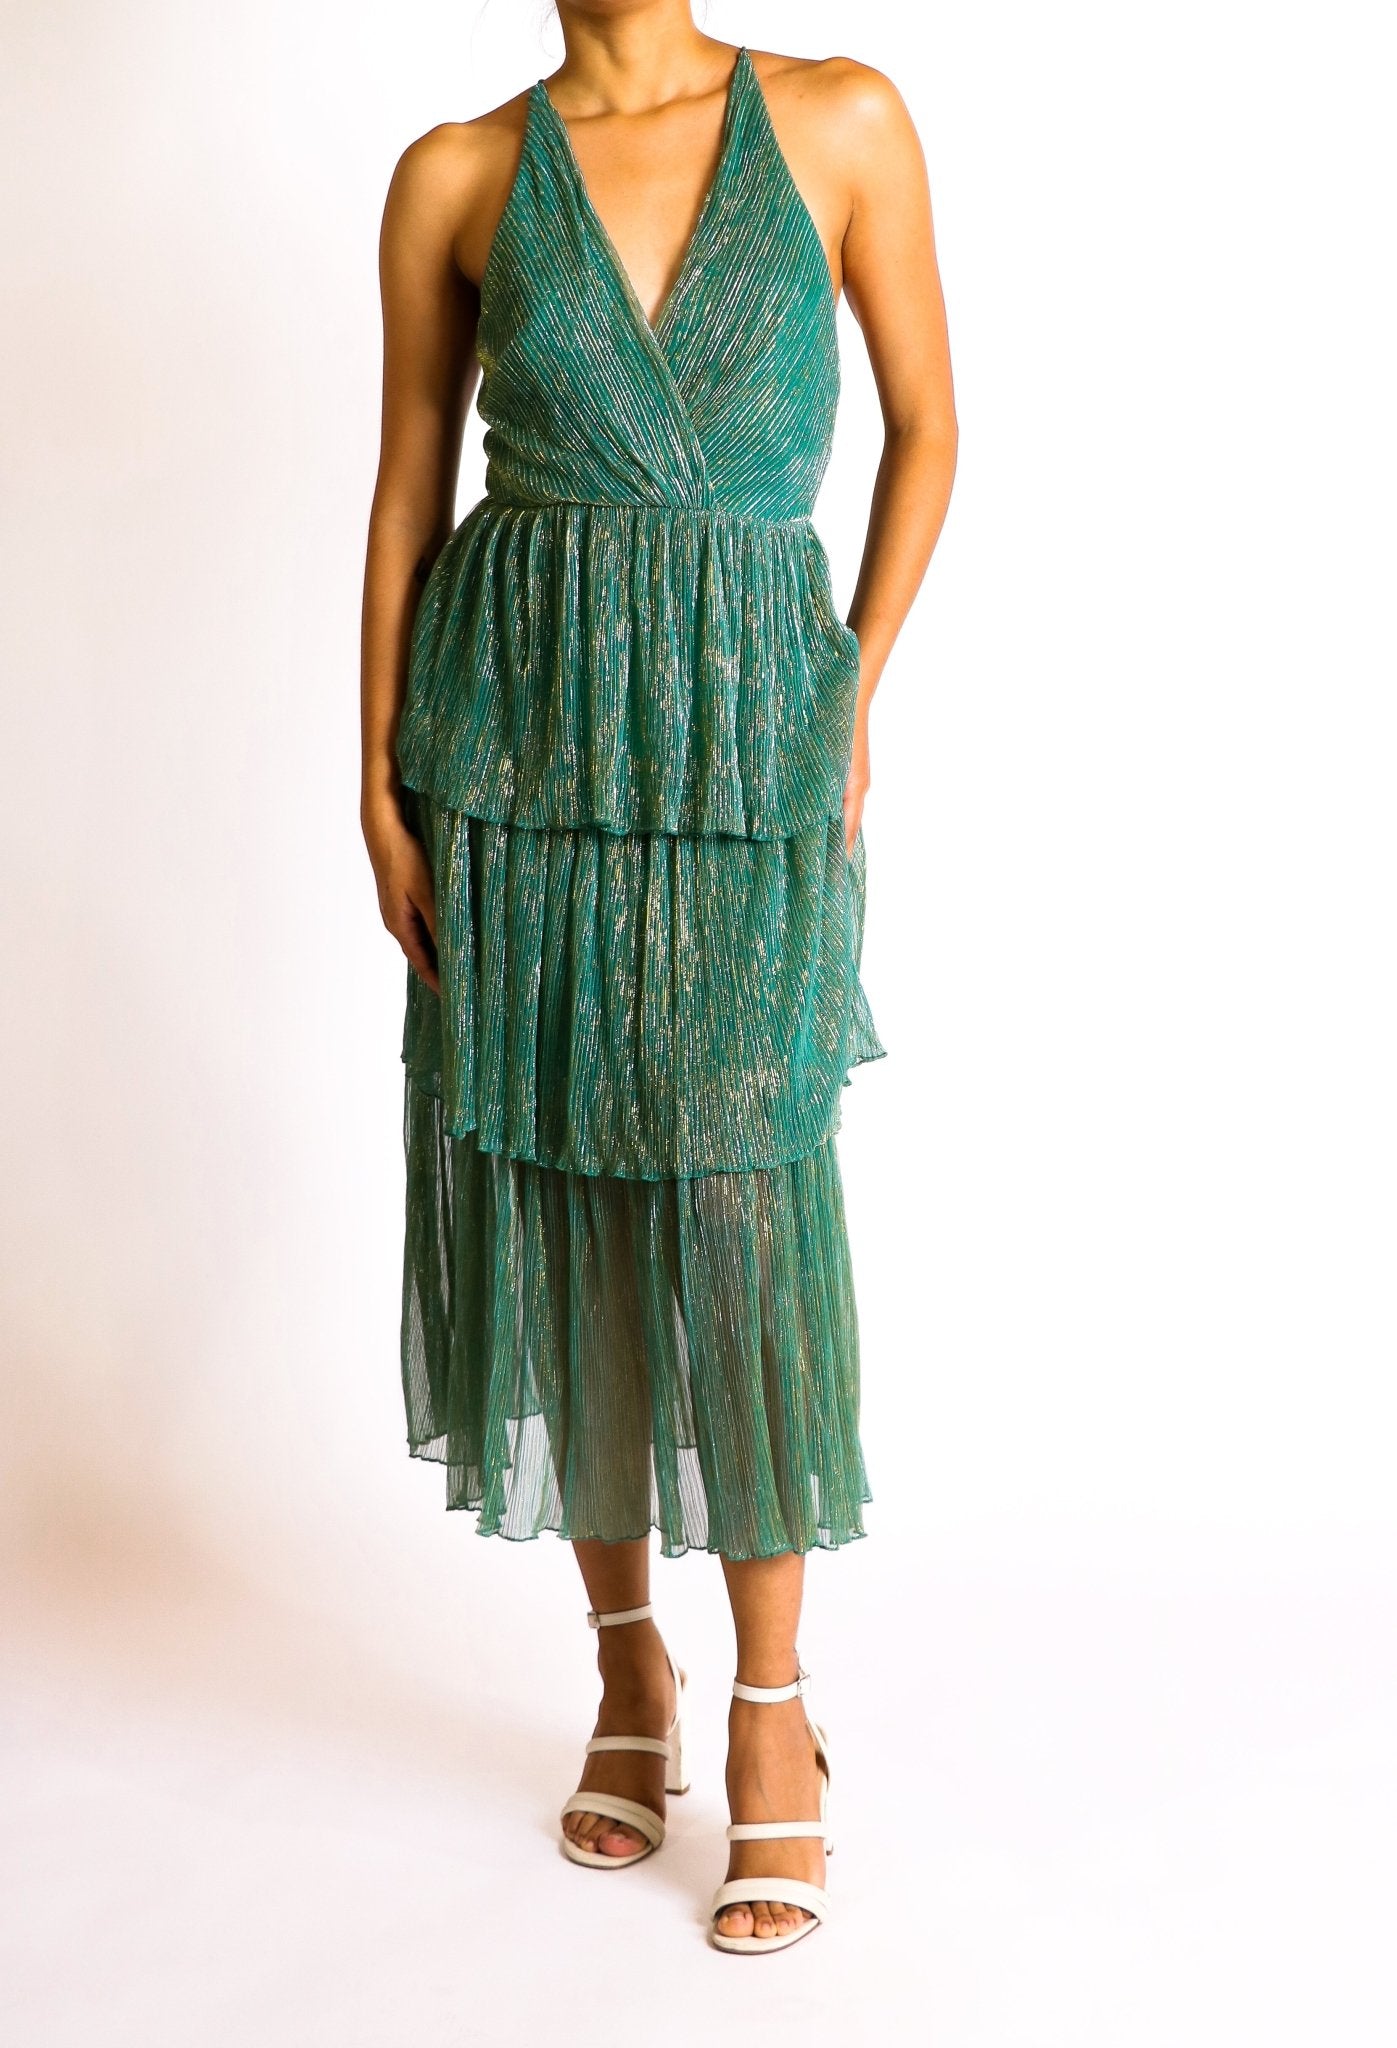 Miriam - venta - Lend the Trend renta de vestidos mexico